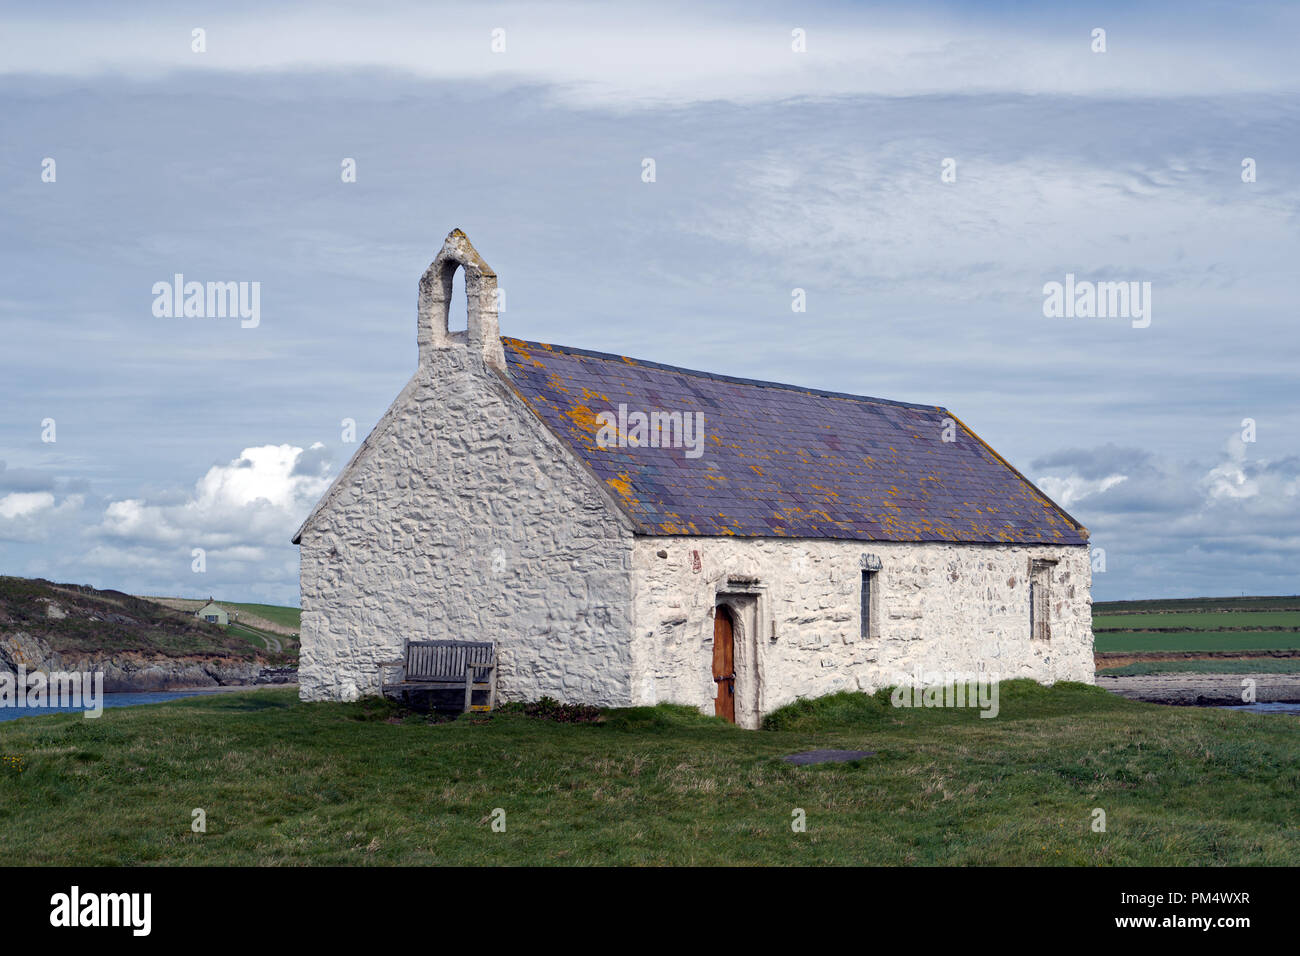 St Cwyfan's, als Kirche im Meer bekannt ist, liegt auf der kleinen Insel in der Nähe von Cribinau Gezeiten Aberffraw, Anglesey gelegen. Es stammt aus dem 12. Jahrhundert. Stockfoto